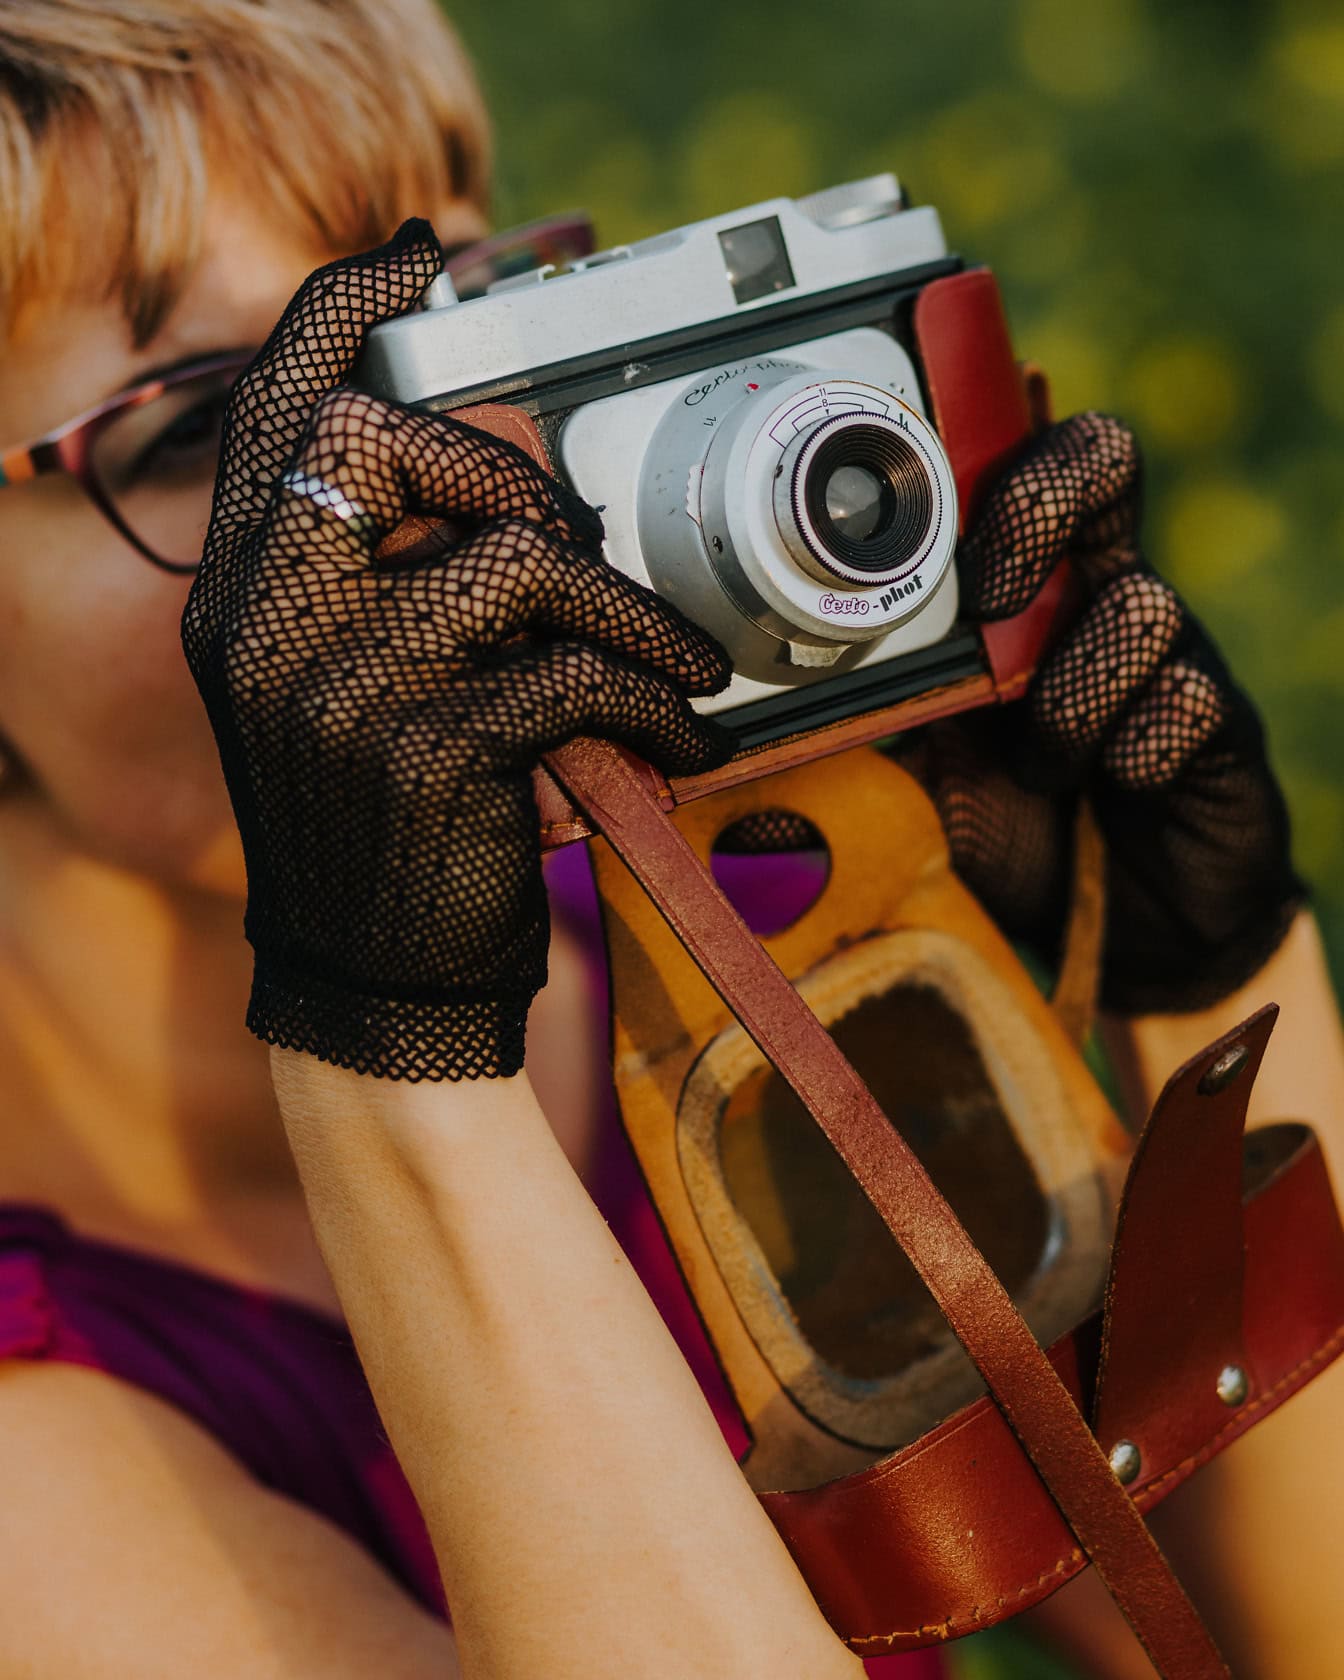 Tyylikkäisiin pitsihansikkaisiin pukeutunut nainen pitelee vanhaa analogista kameraa